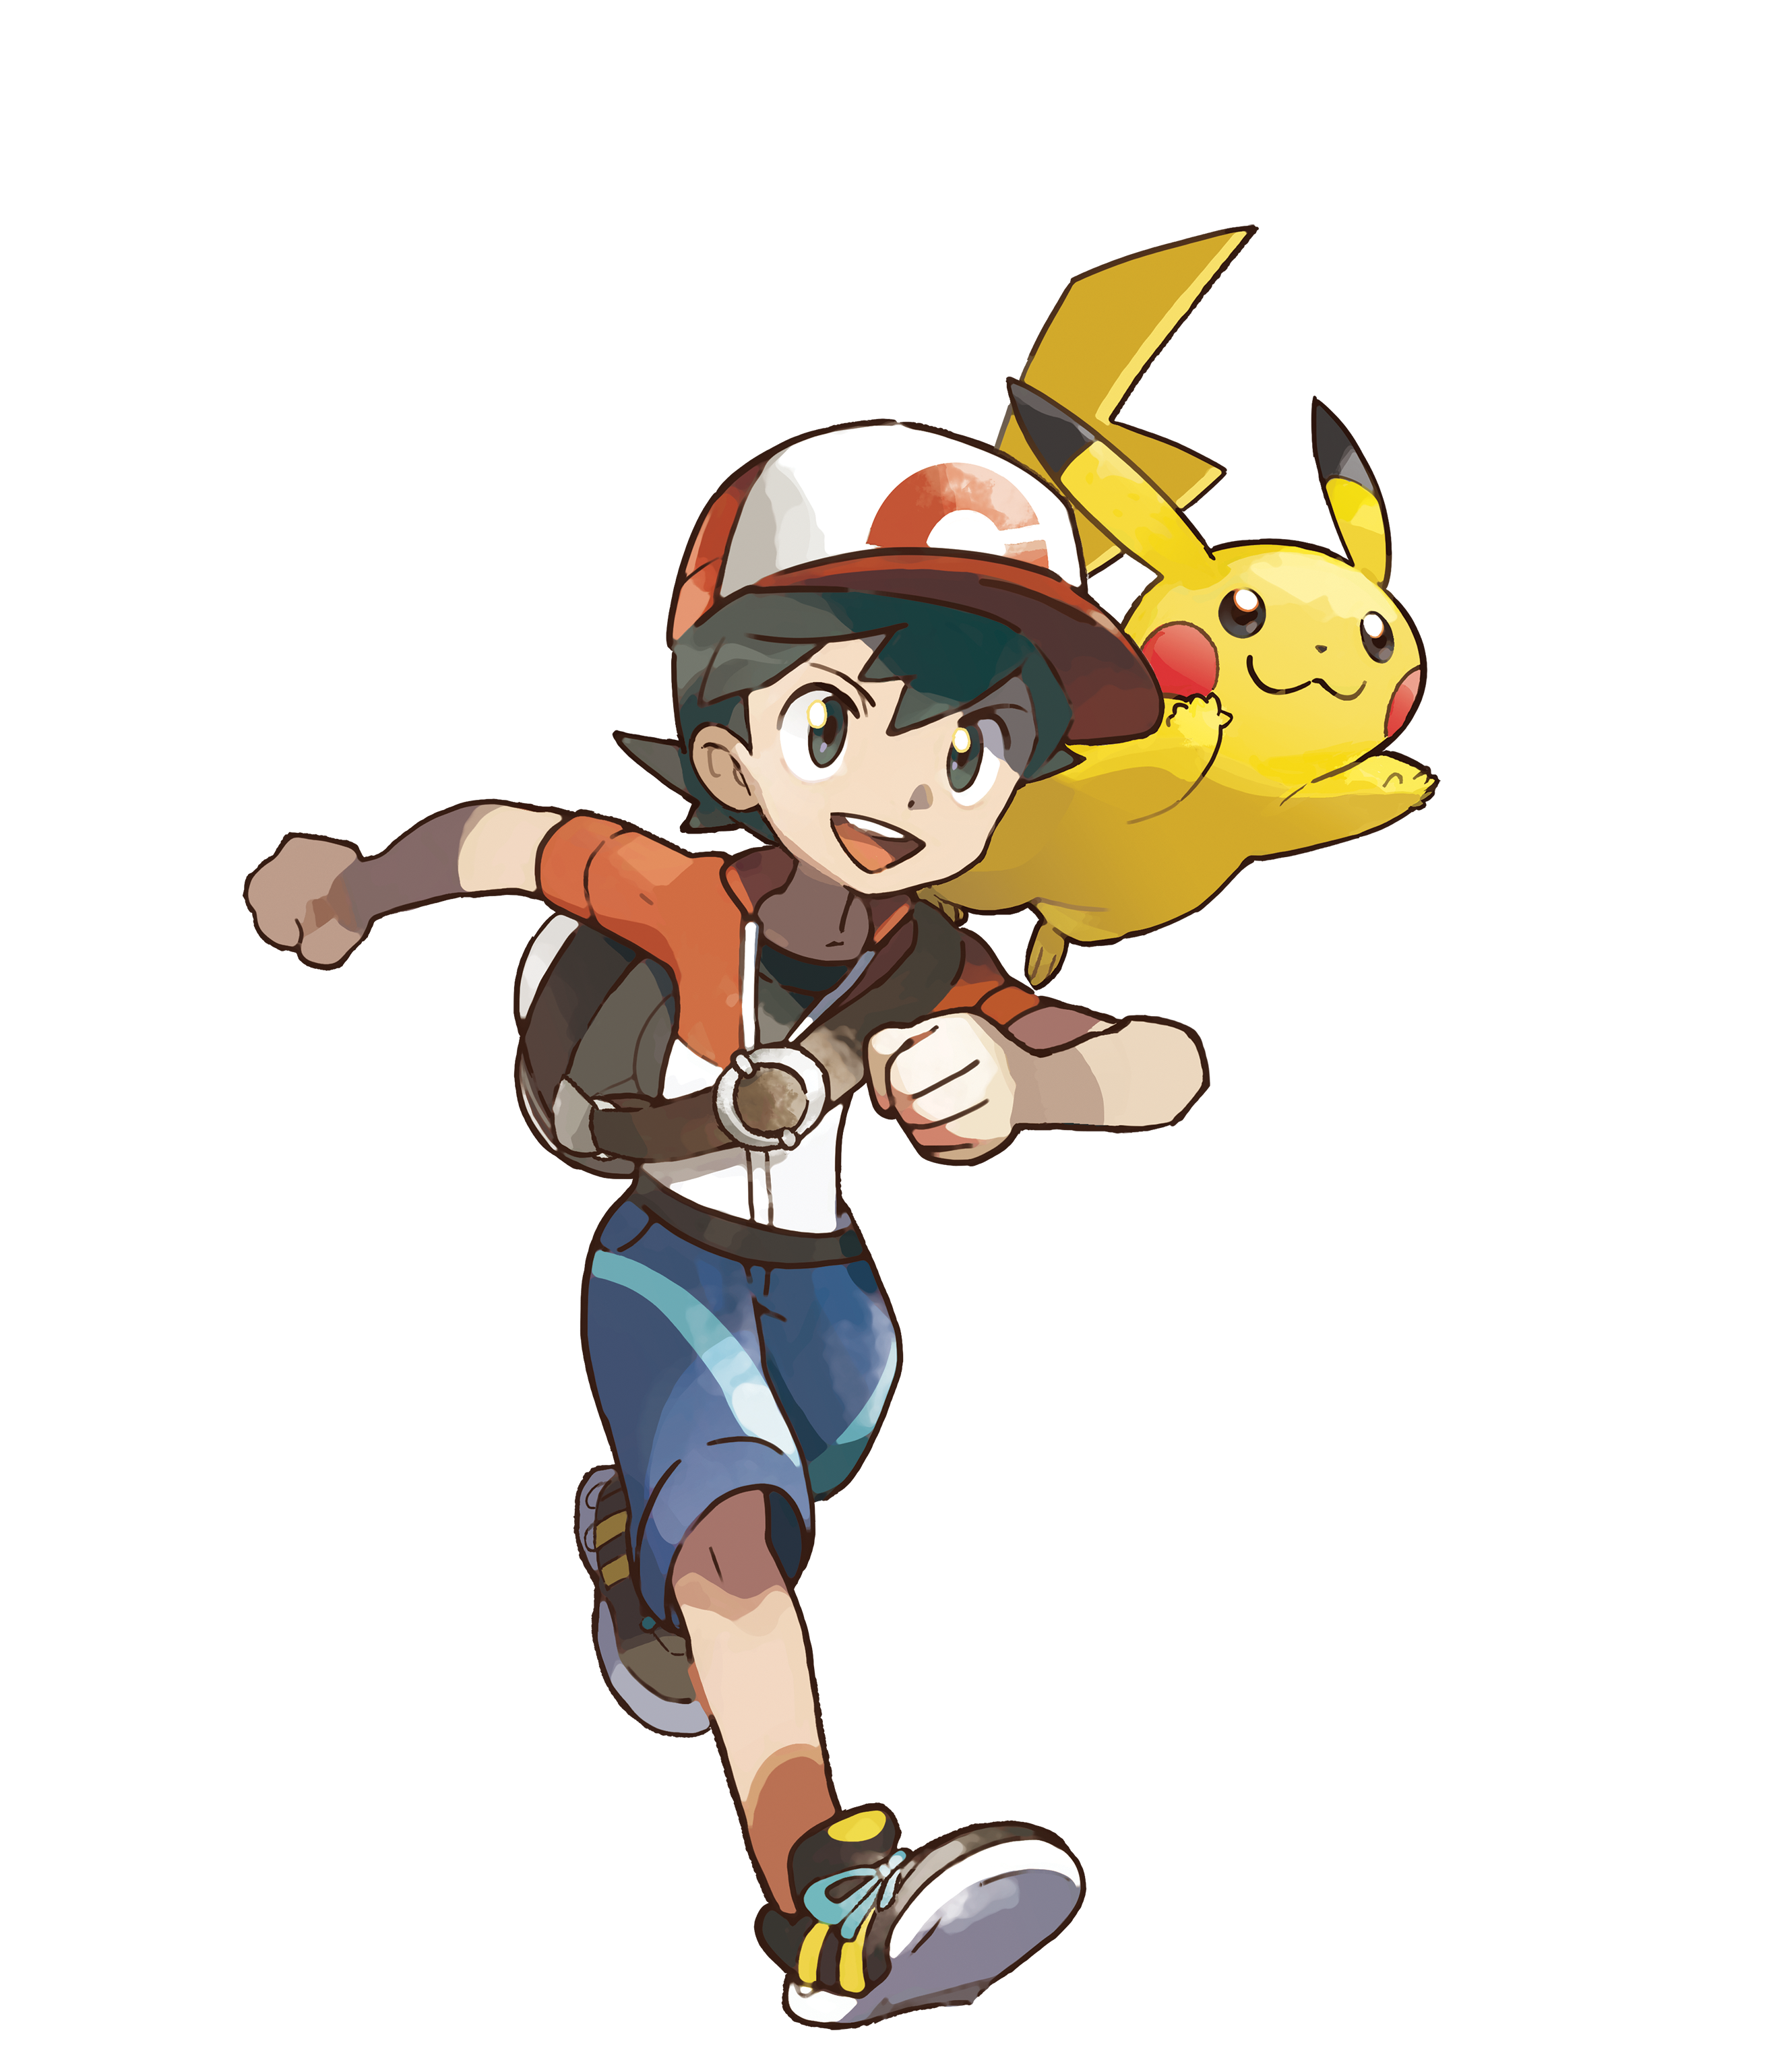 Pokémon Quest Logo - Pokemon Let's Go Eevee Logo, png, transparent png